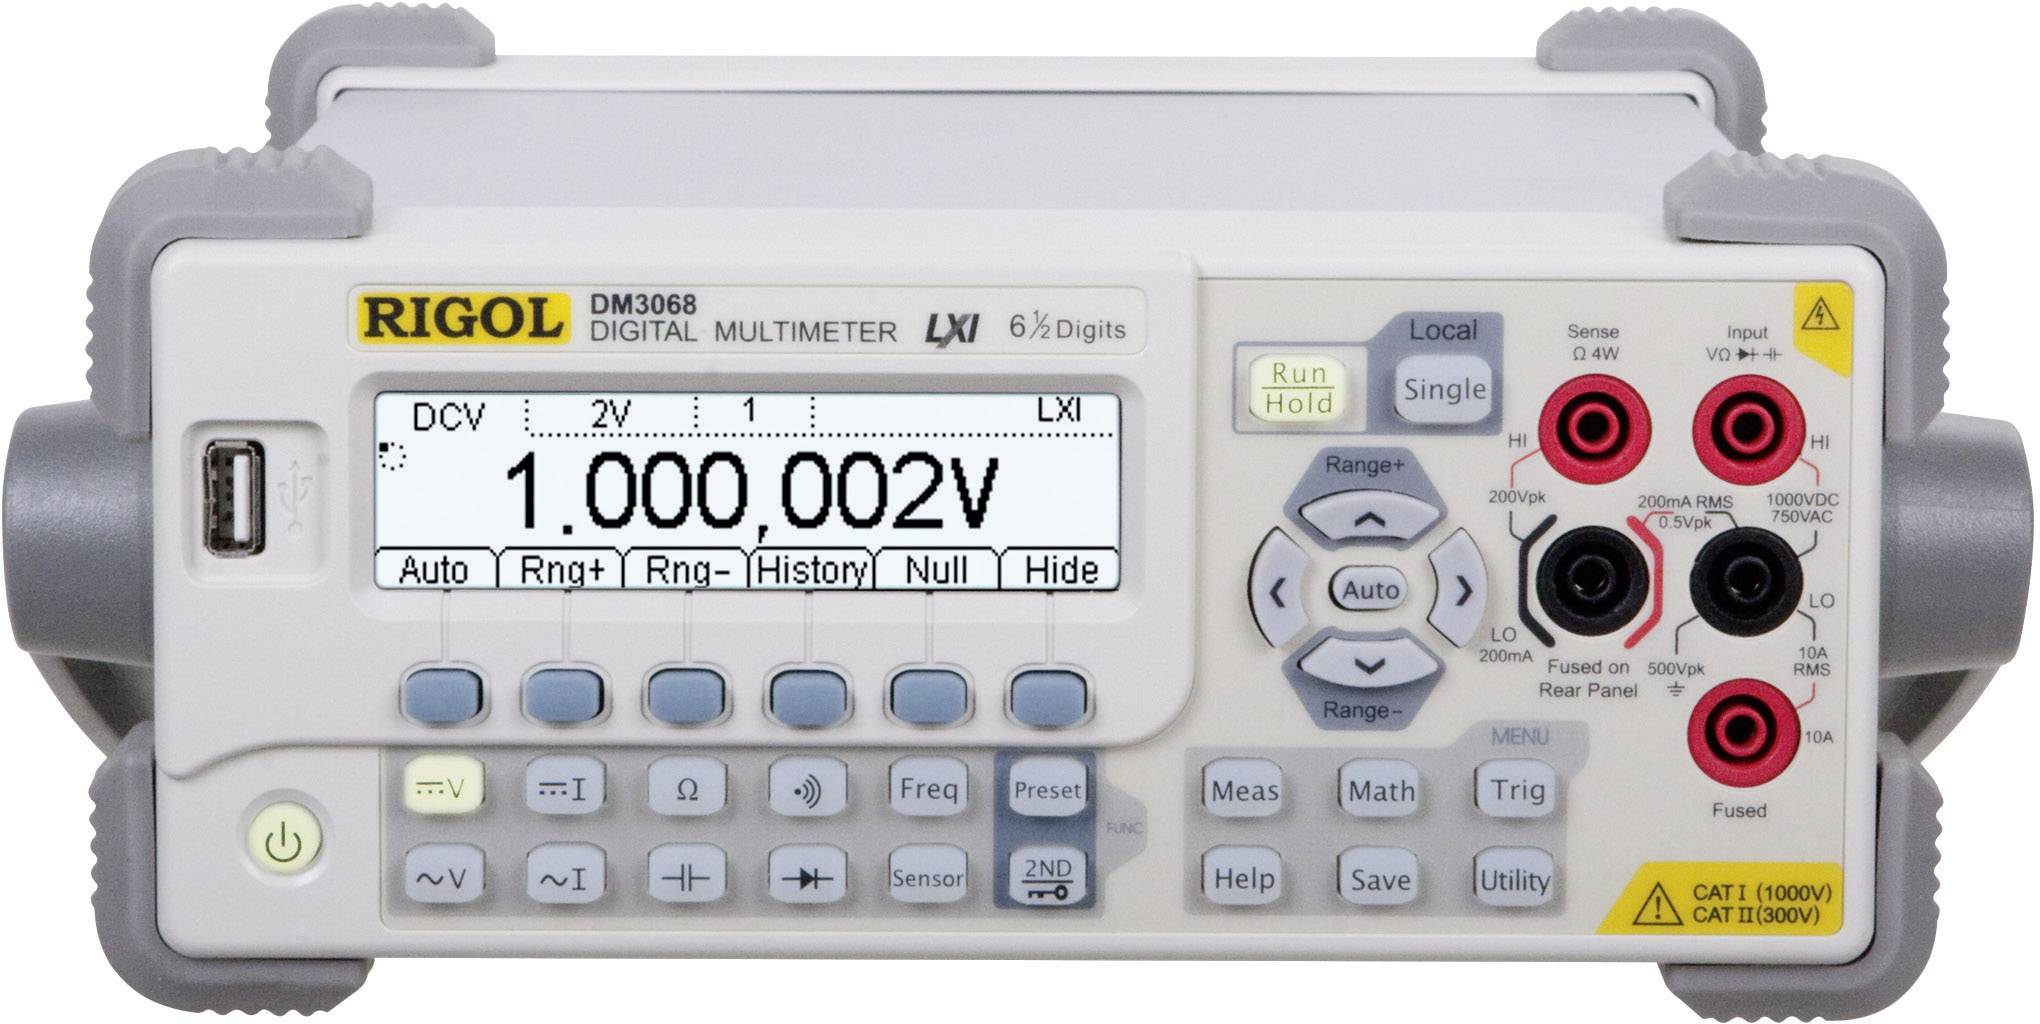 RIGOL Tisch-Multimeter digital Rigol DM3068 Kalibriert nach: Werksstandard CAT II 300 V Anzeige (Cou